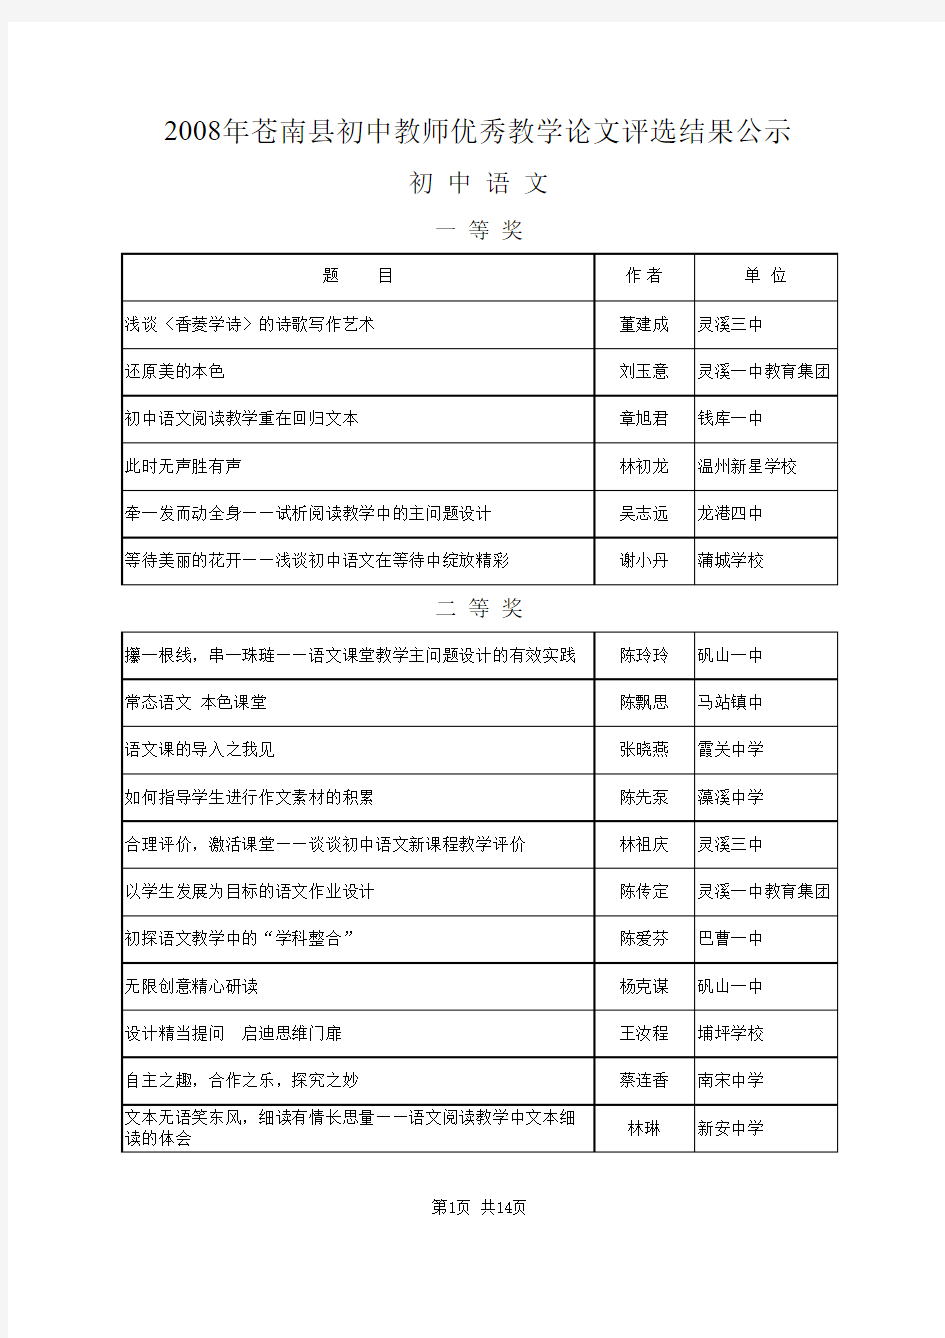 县一等2008年苍南县中小学教师优秀教学案例(论文)评选结果公示